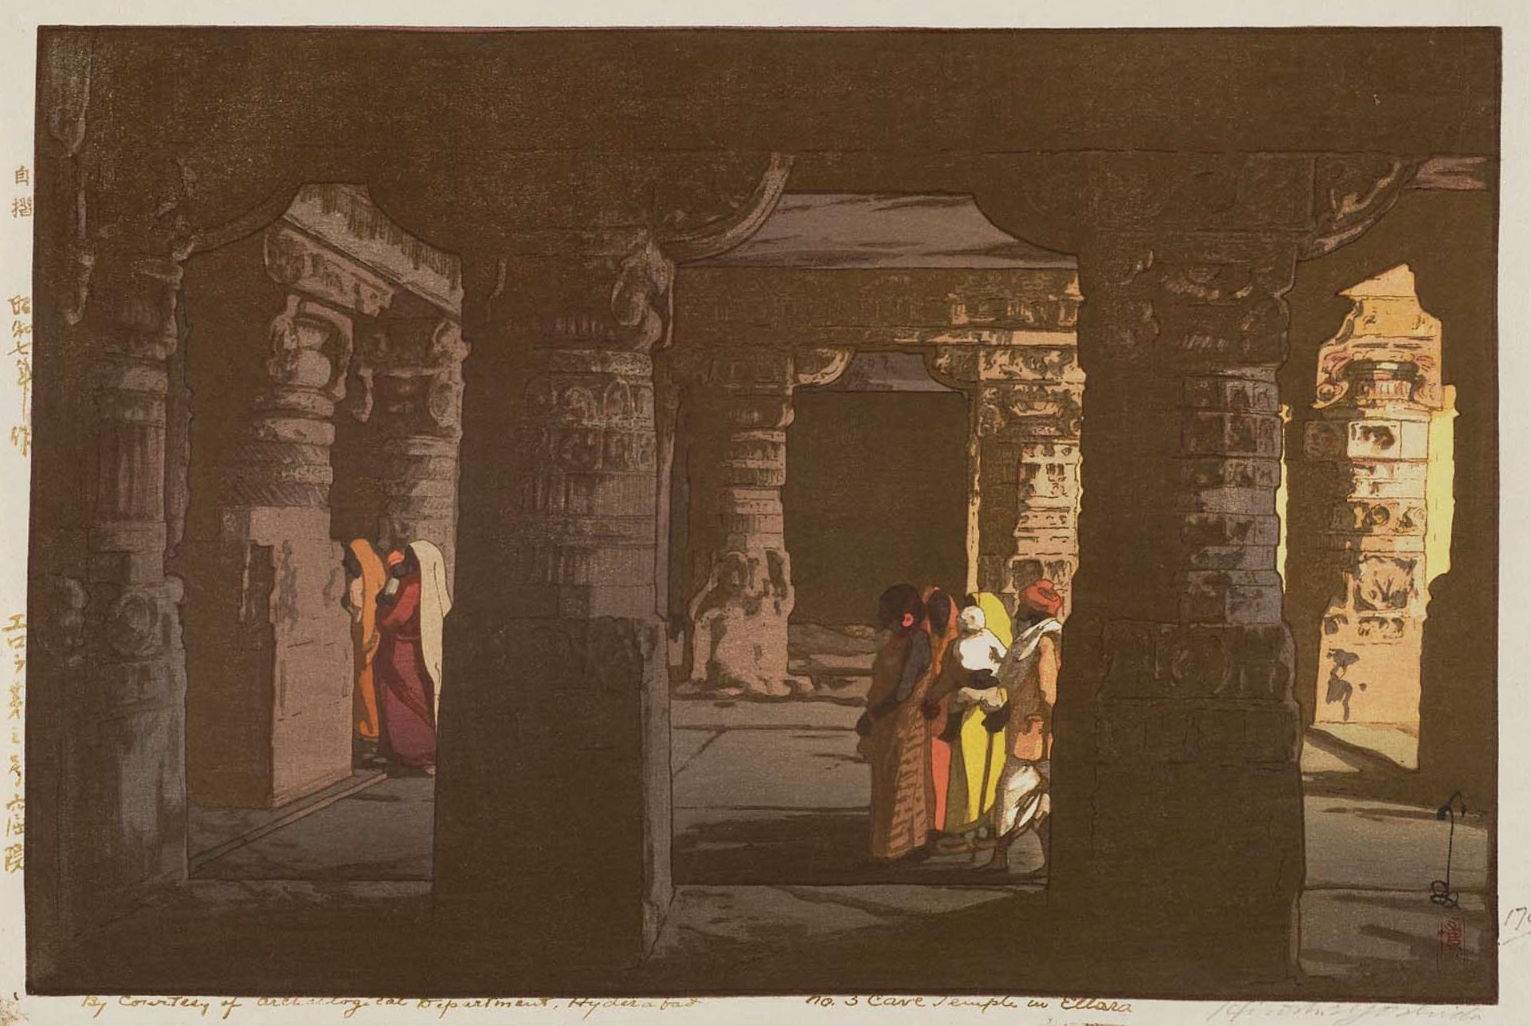 Hiroshi Yoshida “No. 3 Cave Temple in Ellora” 1932 woodblock print